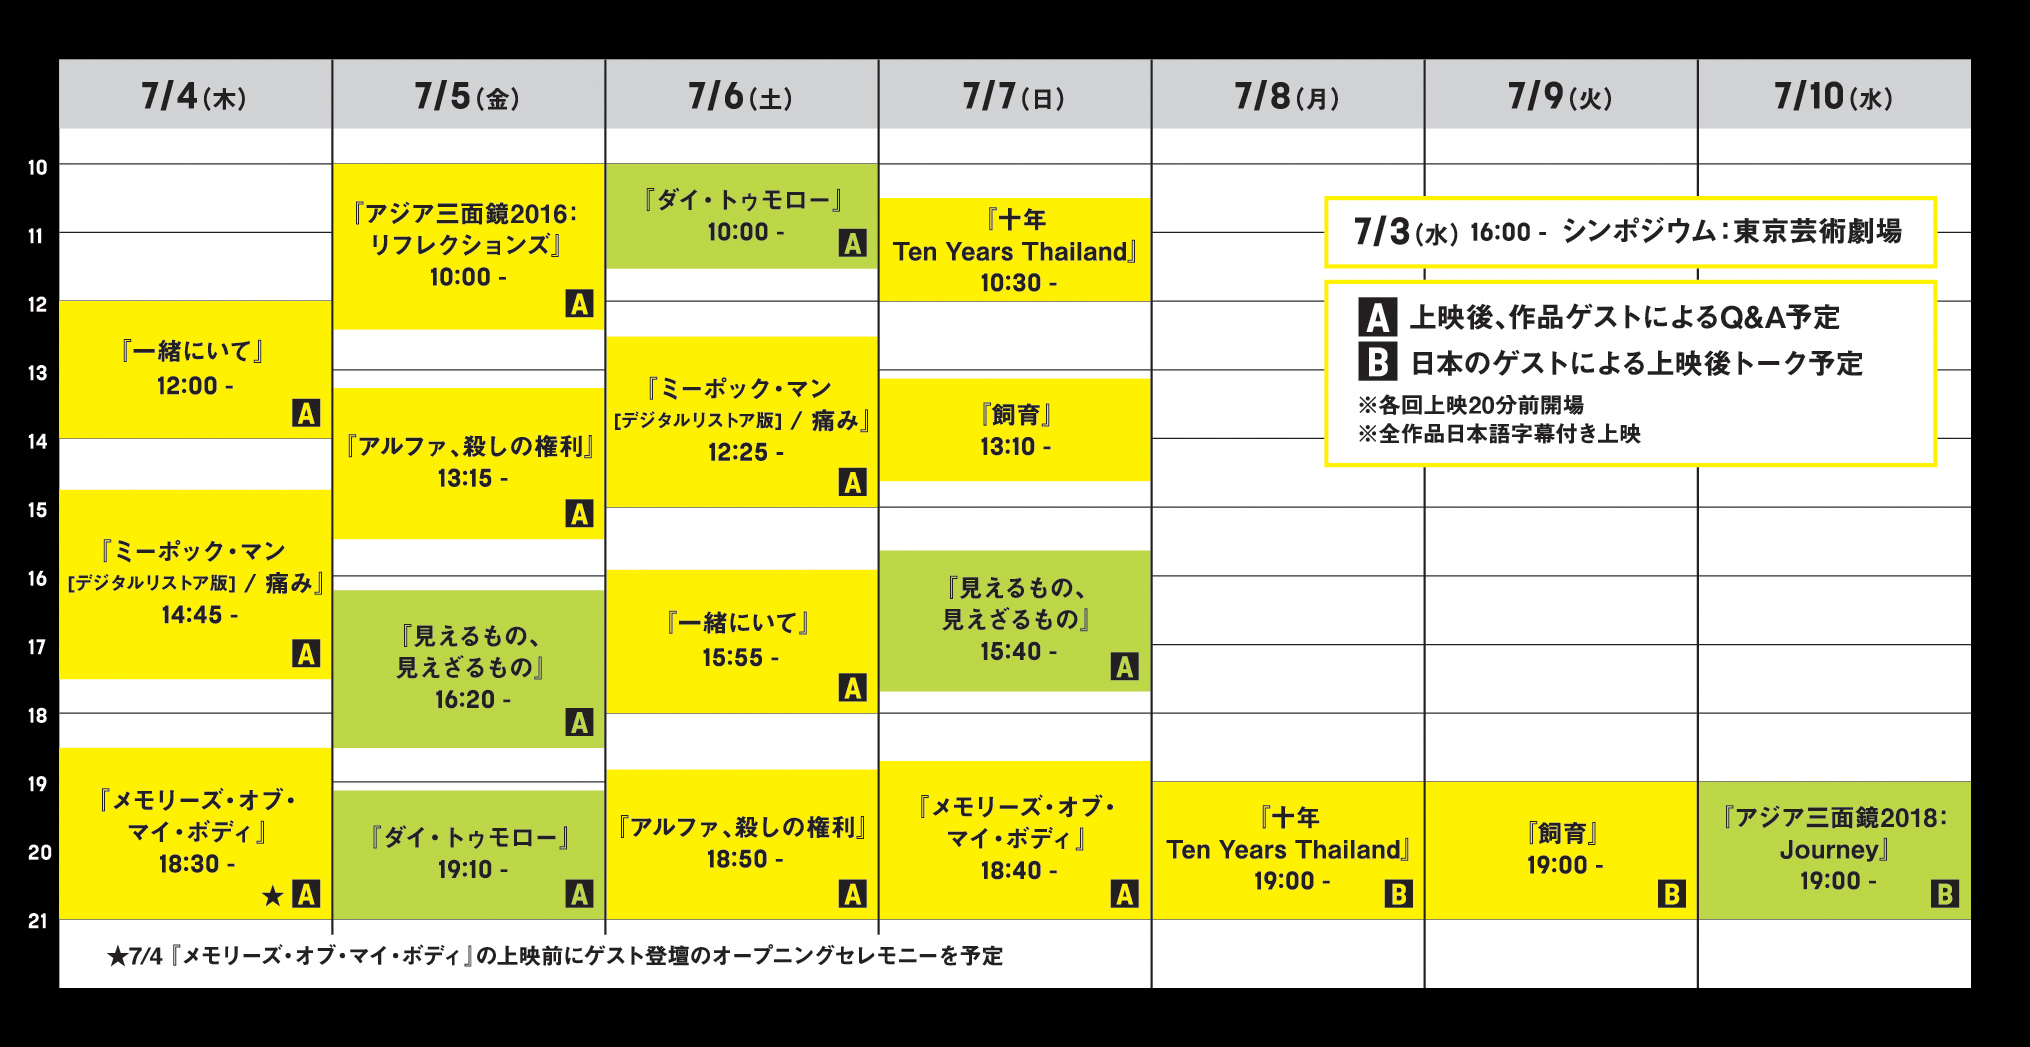 『東南アジア映画の巨匠たち』上映日程表　7月3日16時からシンポジウム（場所：東京芸術劇場）、7月4日（木曜日）12時から『一緒にいて』、14時45分から『ミーポック・マン[デジタルリストア版] / 痛み』（2本上映）、18時30分『メモリーズ・オブ・マイ・ボディ』（上映前にゲスト登壇のオープニングセレモニーを予定）、7月5日（金曜日）10時から『アジア三面鏡2016：リフレクションズ』、13時15分から『アルファ、殺しの権利』、16時20分から『見えるもの、見えざるもの』、19時10分から『ダイ・トゥモロー』、7月6日（土曜日）10時から『ダイ・トゥモロー』、12時25分から『ミーポック・マン[デジタルリストア版] / 痛み』（2本上映）、15時55分から『一緒にいて』、18時50分から『アルファ、殺しの権利』、7月7日（日曜日）10時30分から『十年　Ten Years Thailand』、13時10分から『飼育』、15時40分から『見えるもの、見えざるもの』、18時40分から『メモリーズ・オブ・マイ・ボディ』、7月8日（月曜日）19時から『十年　Ten Years Thailand』、7月9日（火曜日）19時から『飼育』、7月10日（月）19時から『アジア三面鏡2018：Journey』